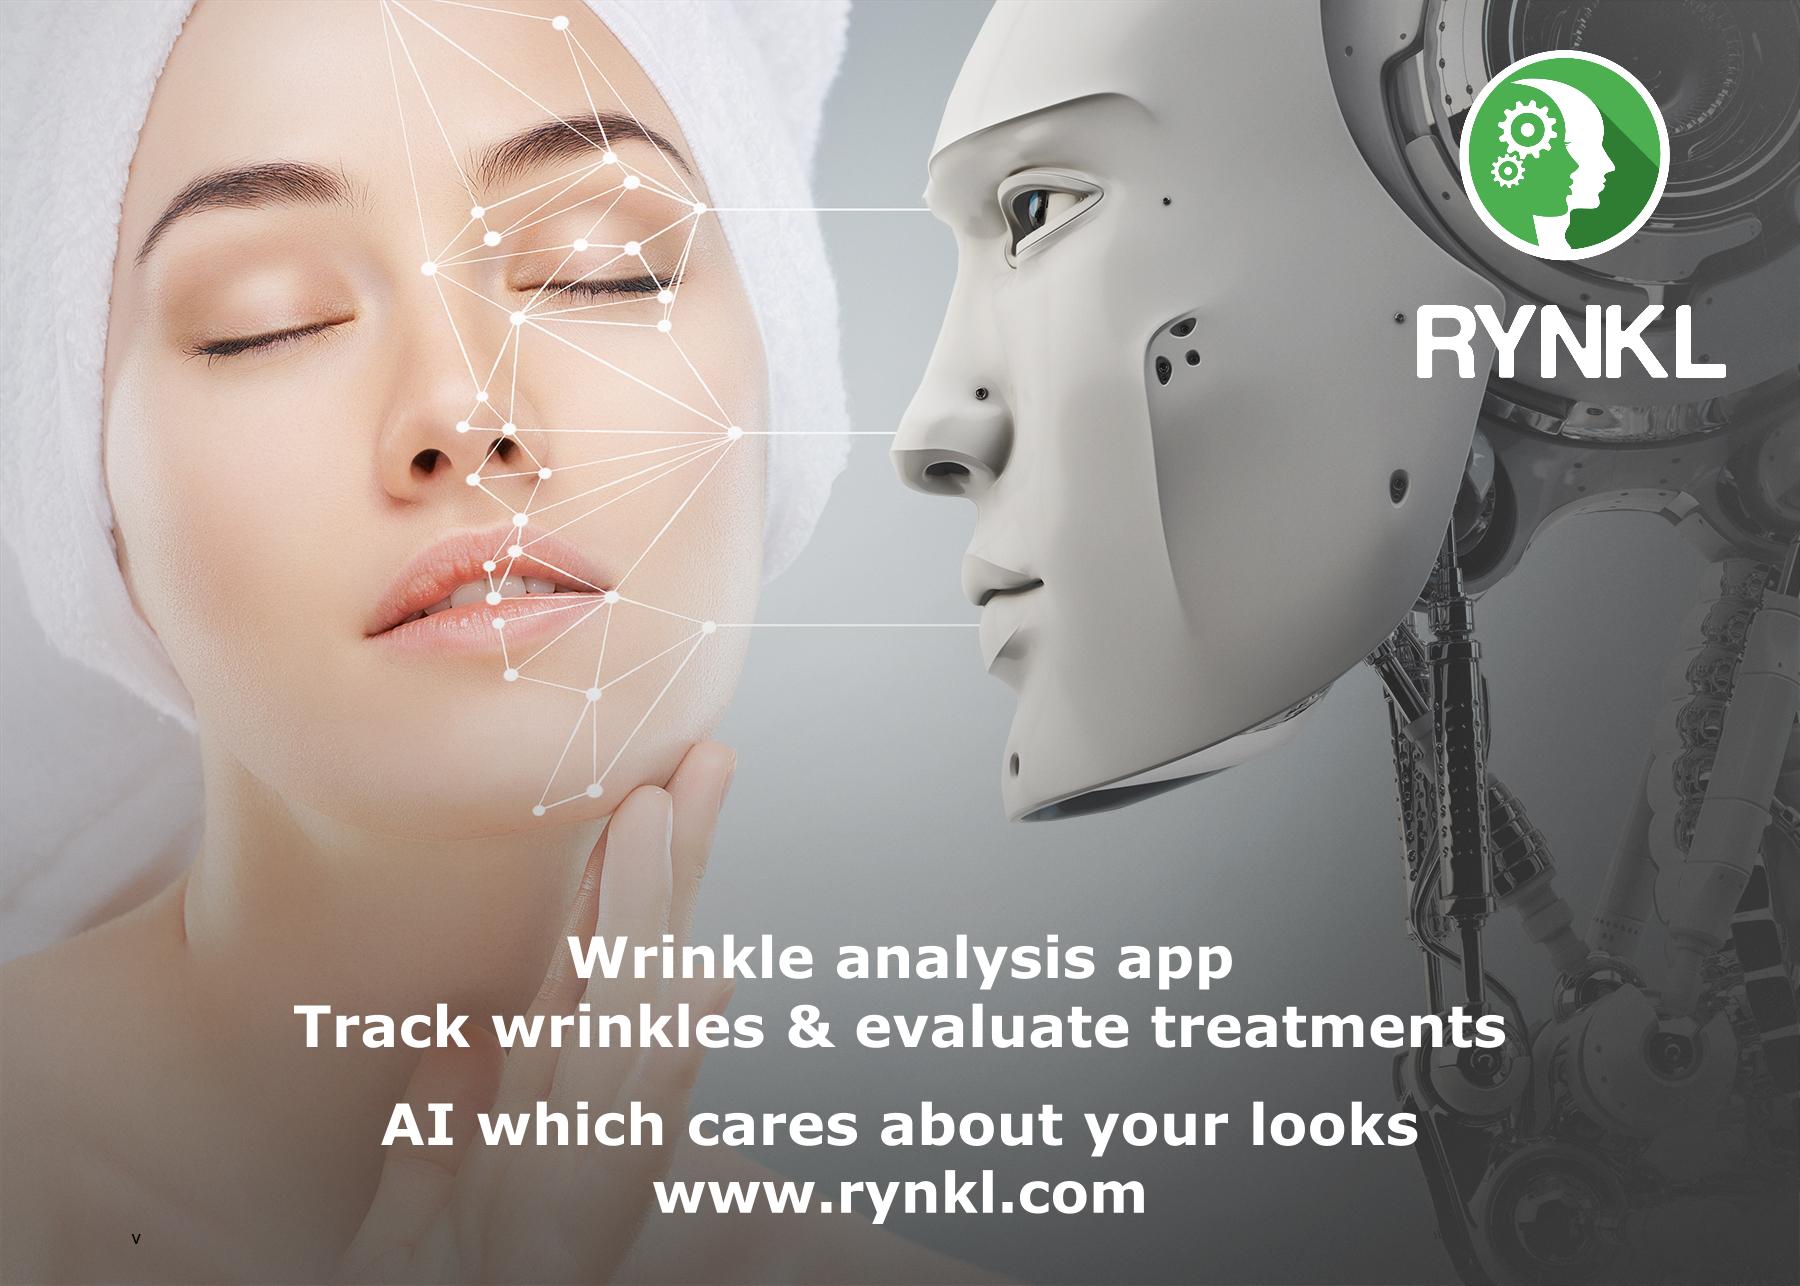 RYNKL wrinkle analysis app.